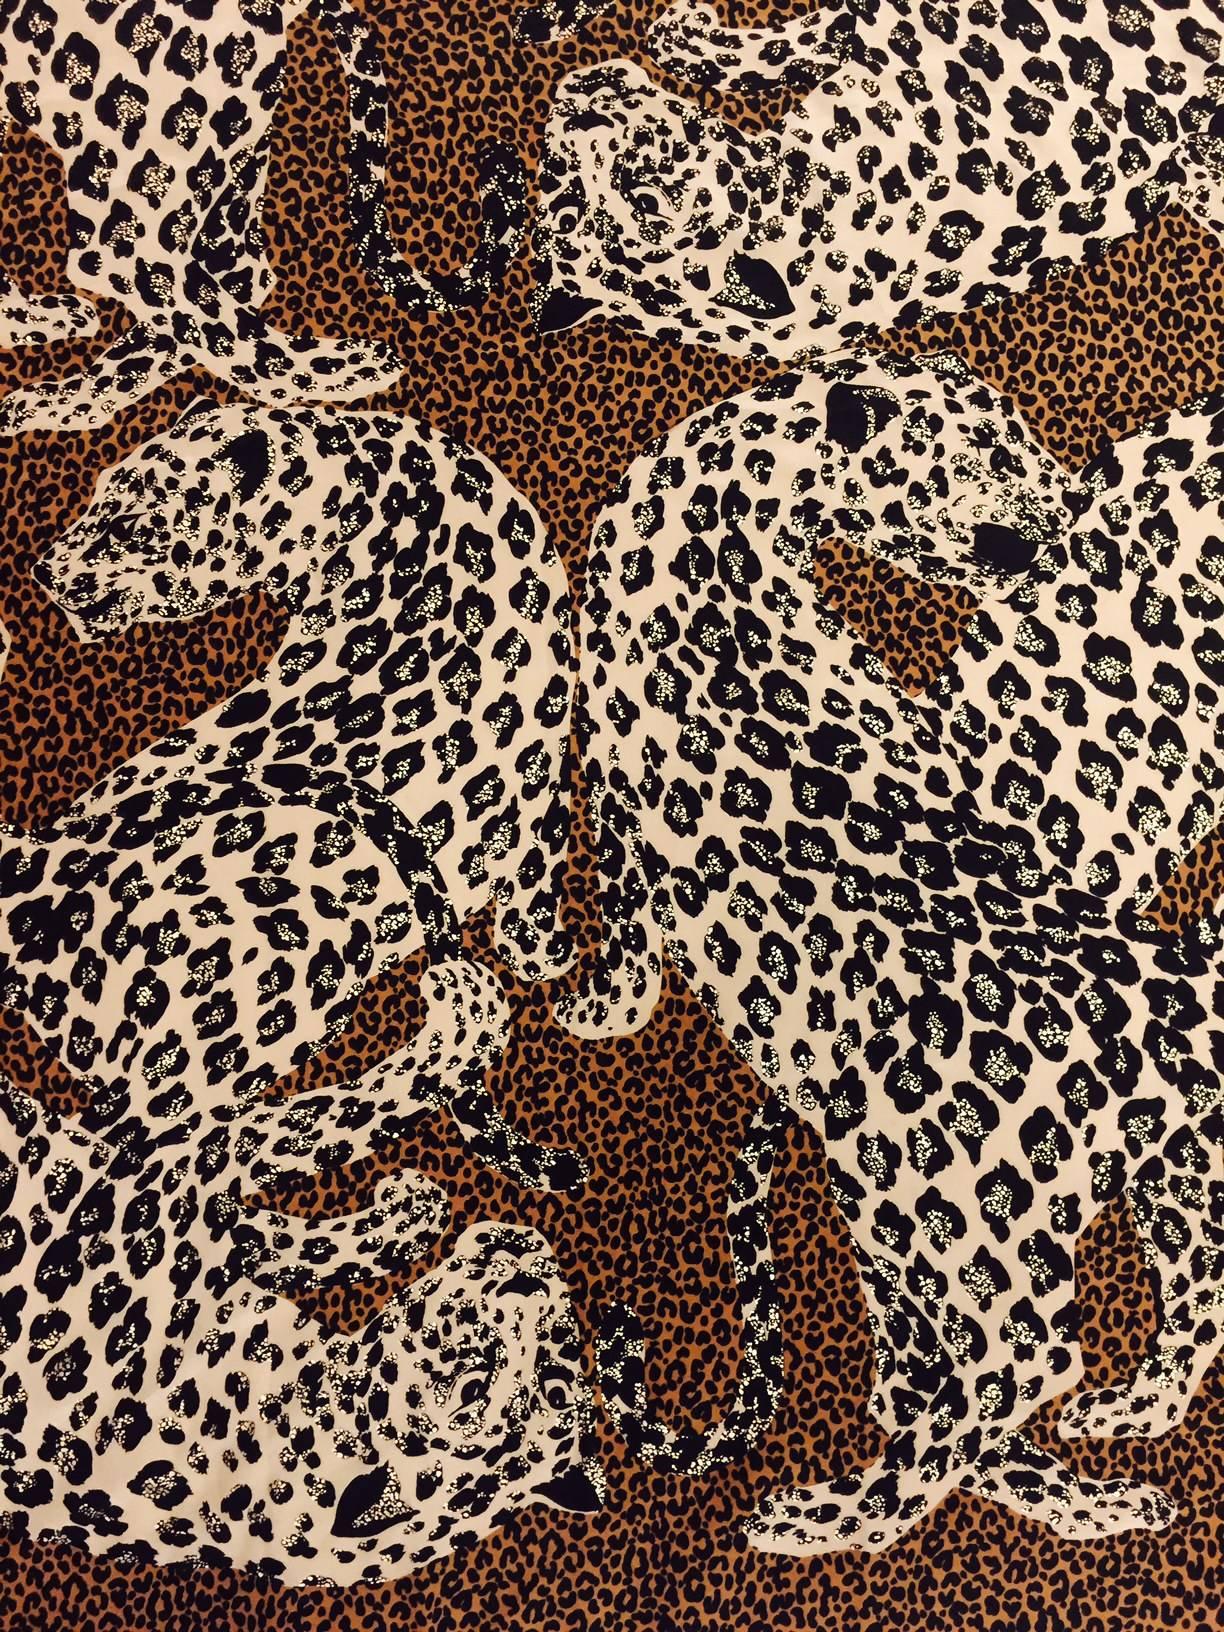 Women's Luxuious YSL 100% Silk Leopard Scarf in Brown, Beige & Black With Gold Flecks